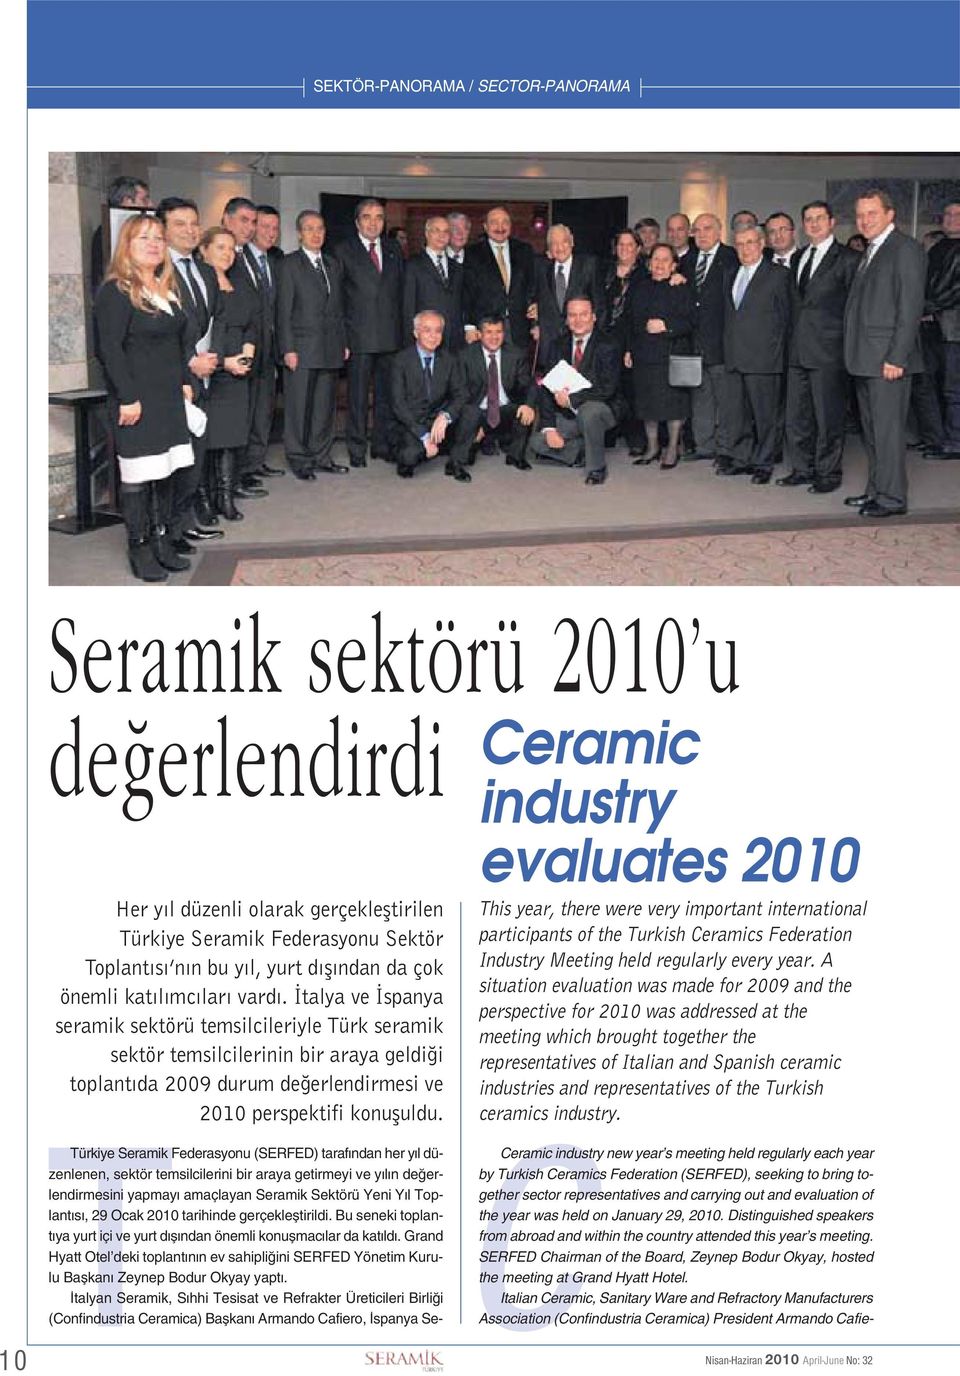 İtalya ve İspanya seramik sektörü temsilcileriyle Türk seramik sektör temsilcilerinin bir araya geldiği toplantıda 2009 durum değerlendirmesi ve 2010 perspektifi konuşuldu.